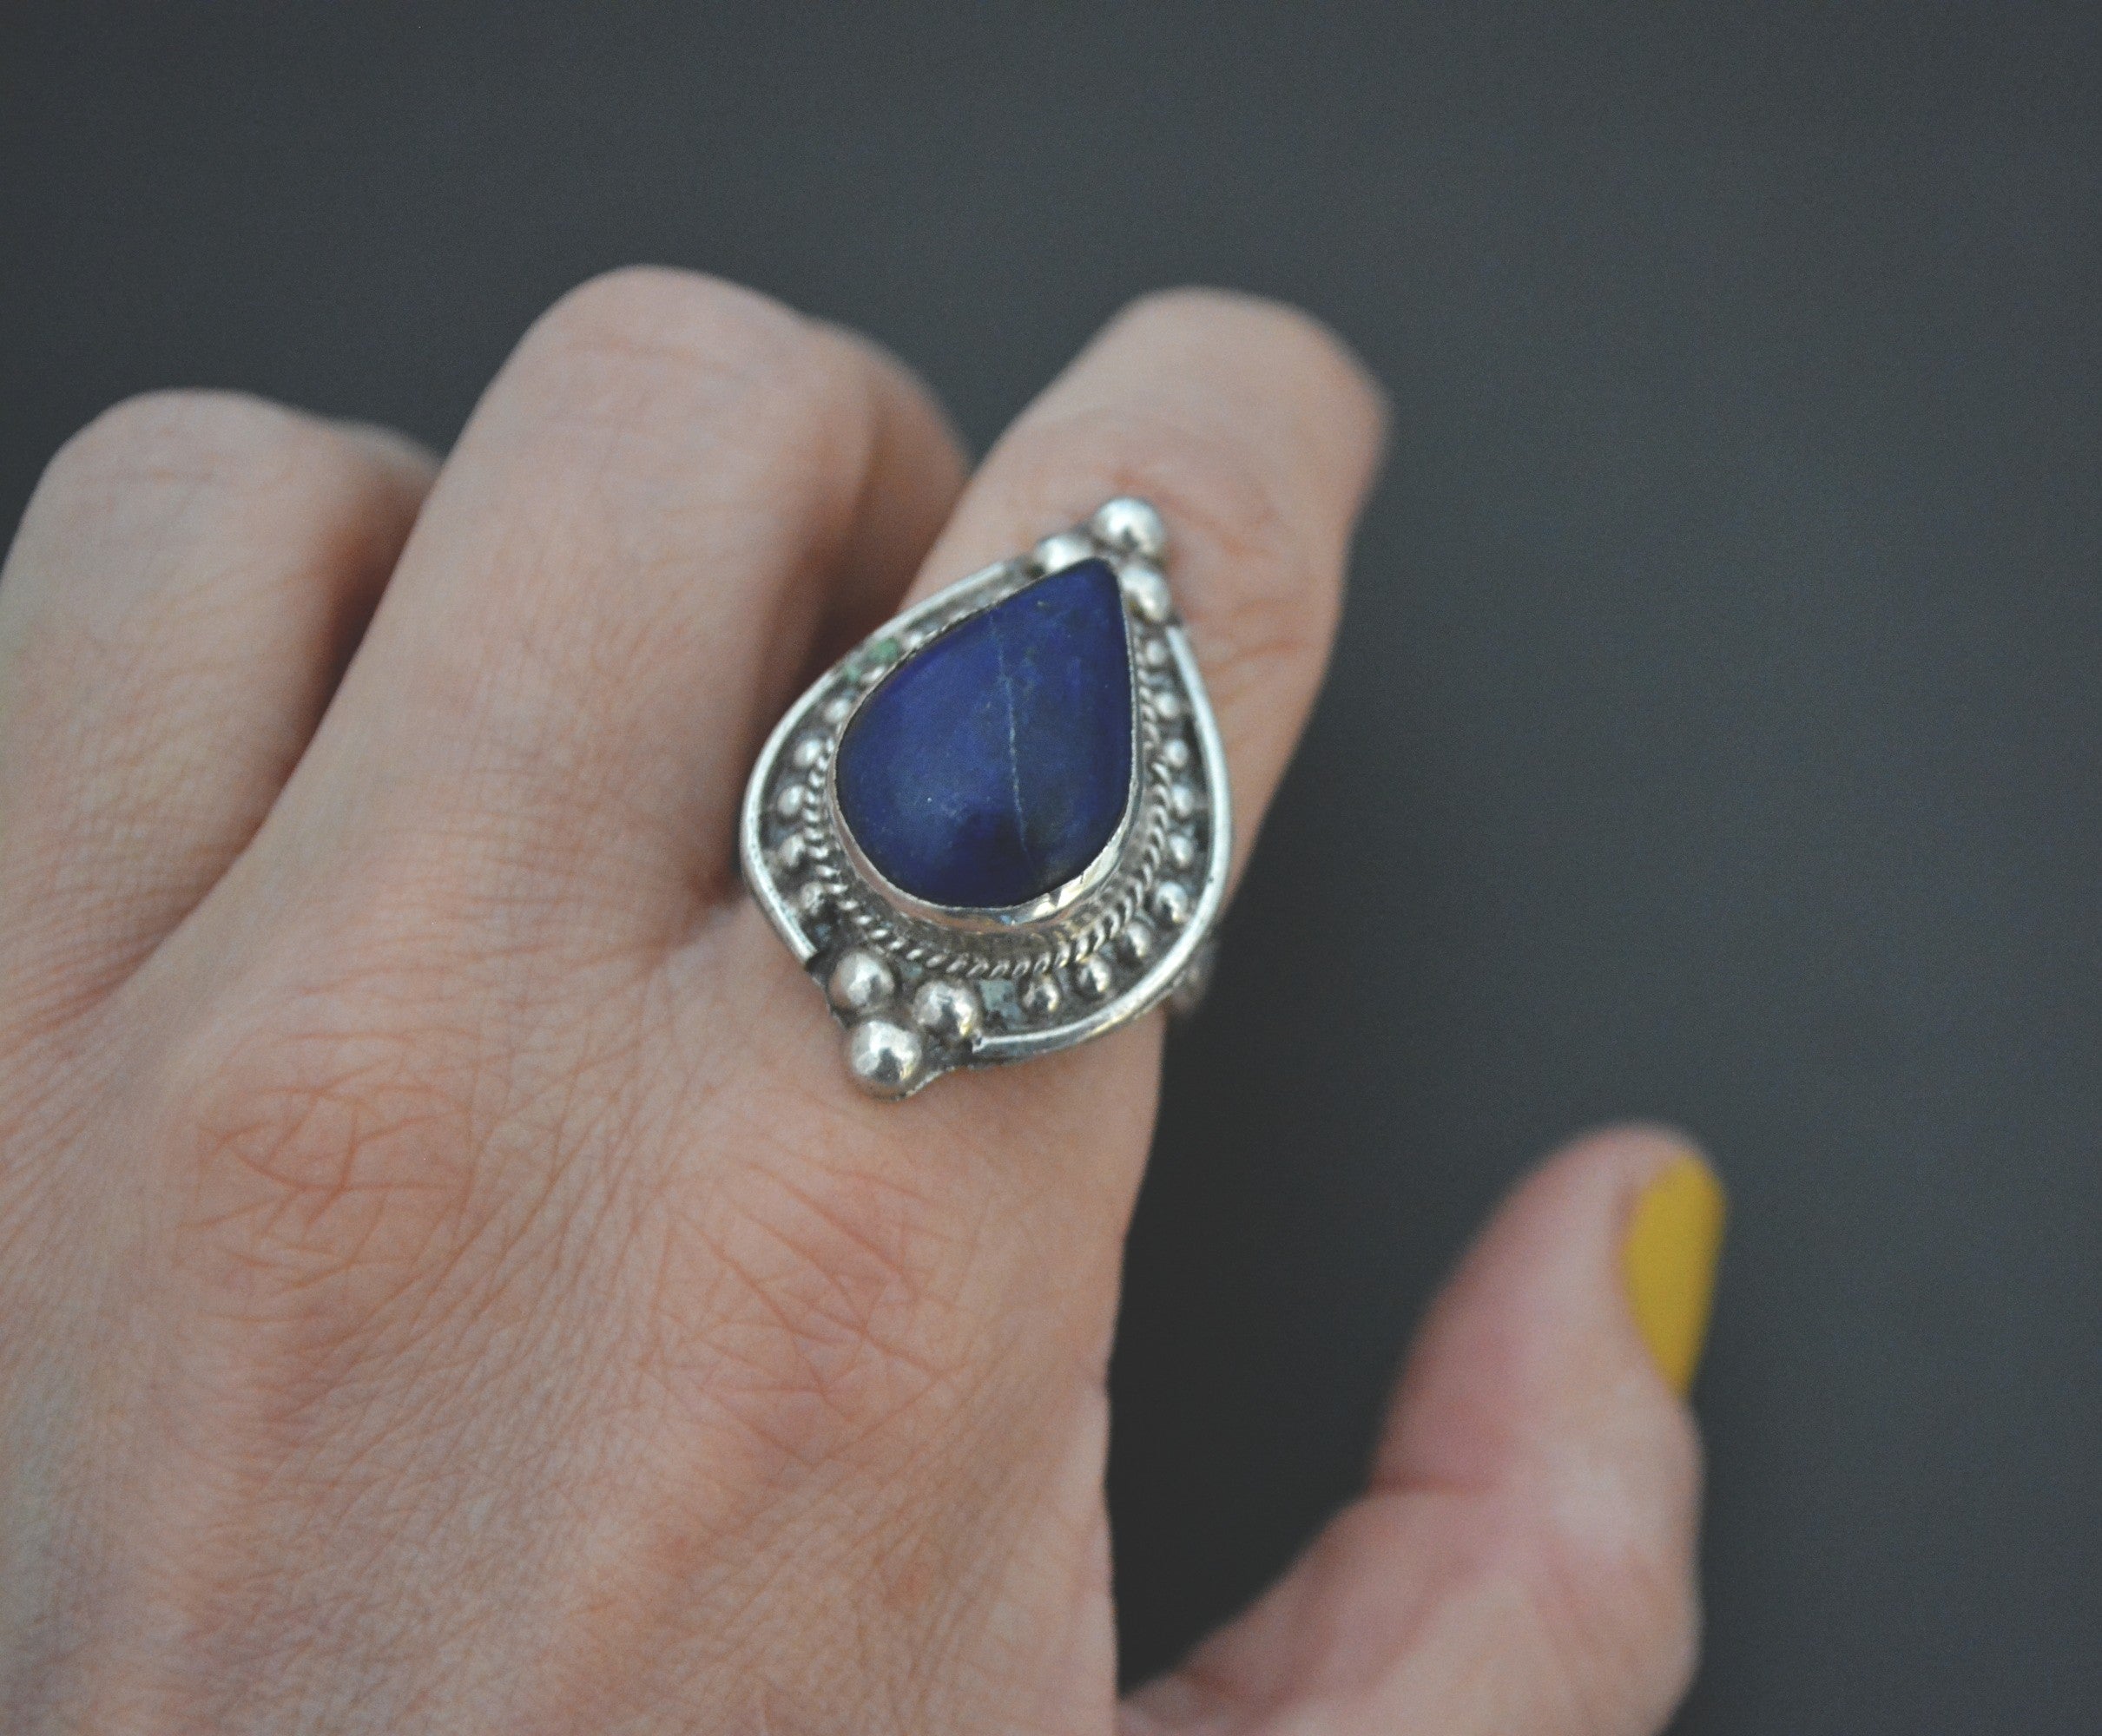 Ethnic Lapis Lazuli Ring India - Size 8.5